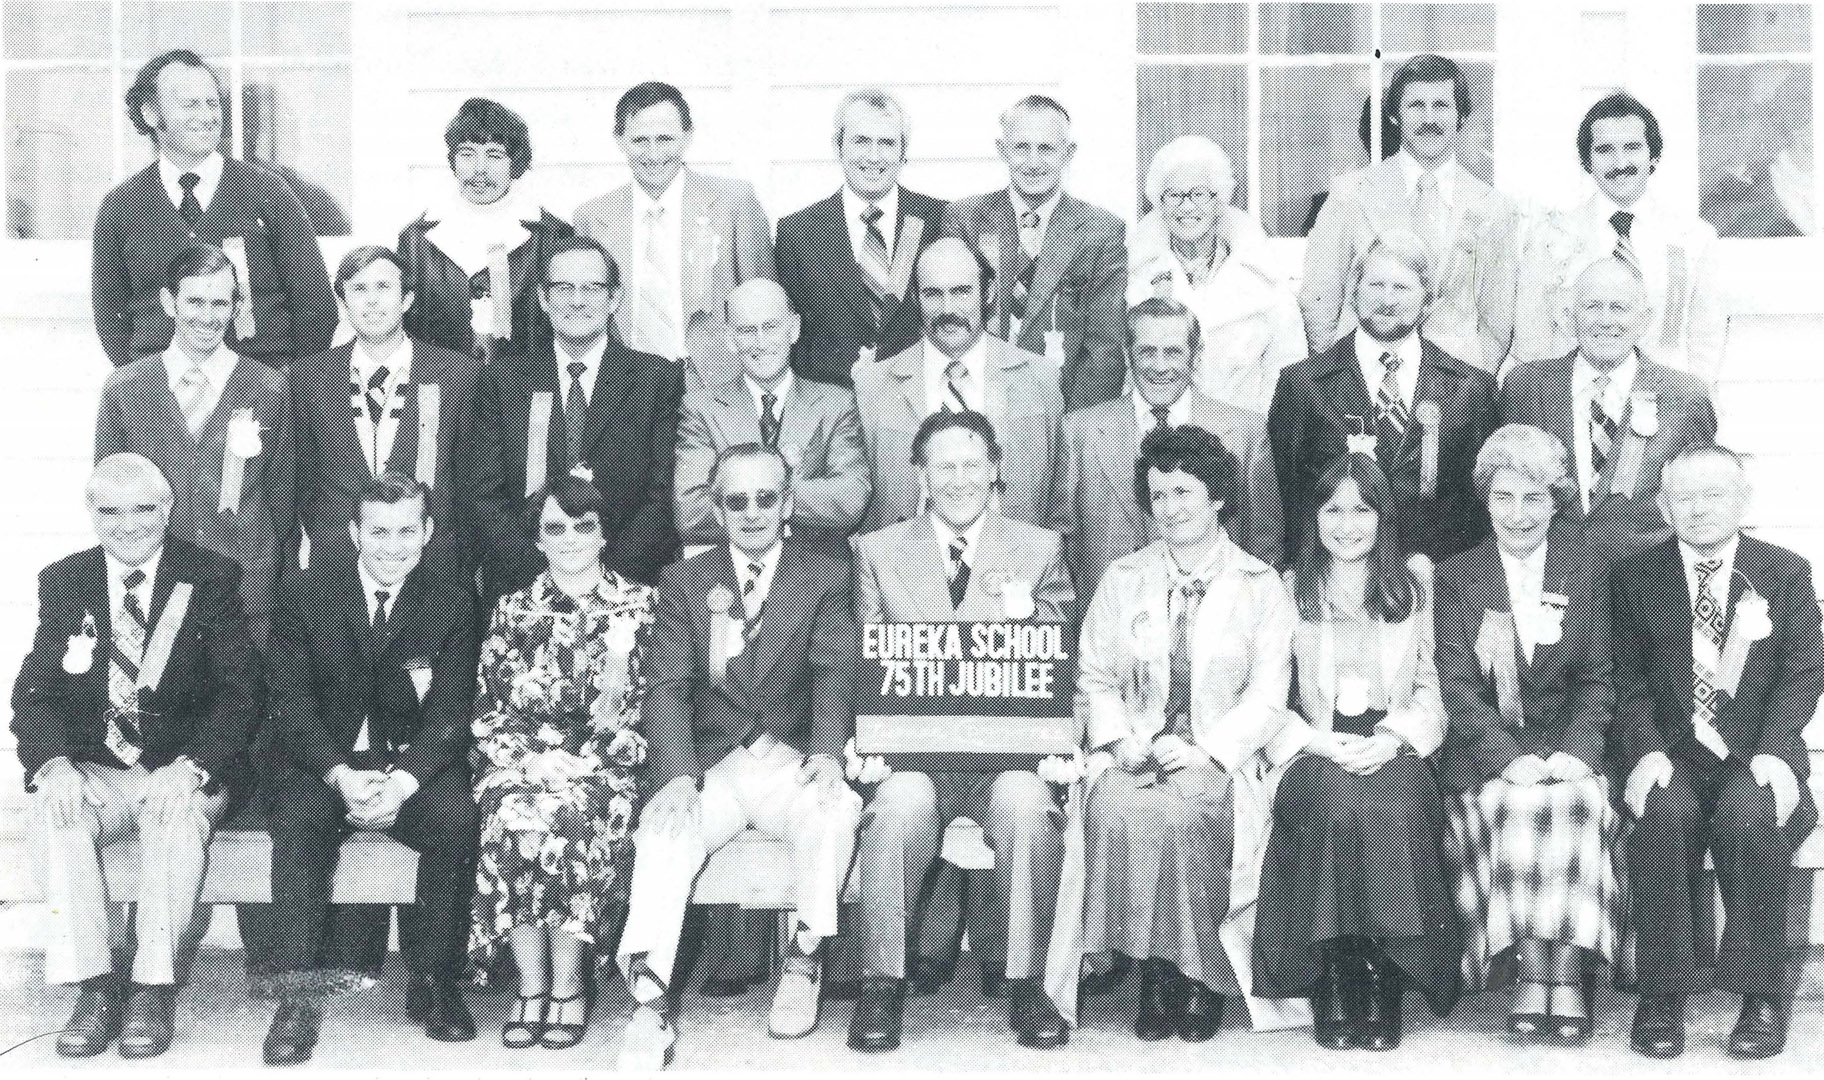 EUREKA SCHOOL 75th JUBILEE COMMITTEE -1979